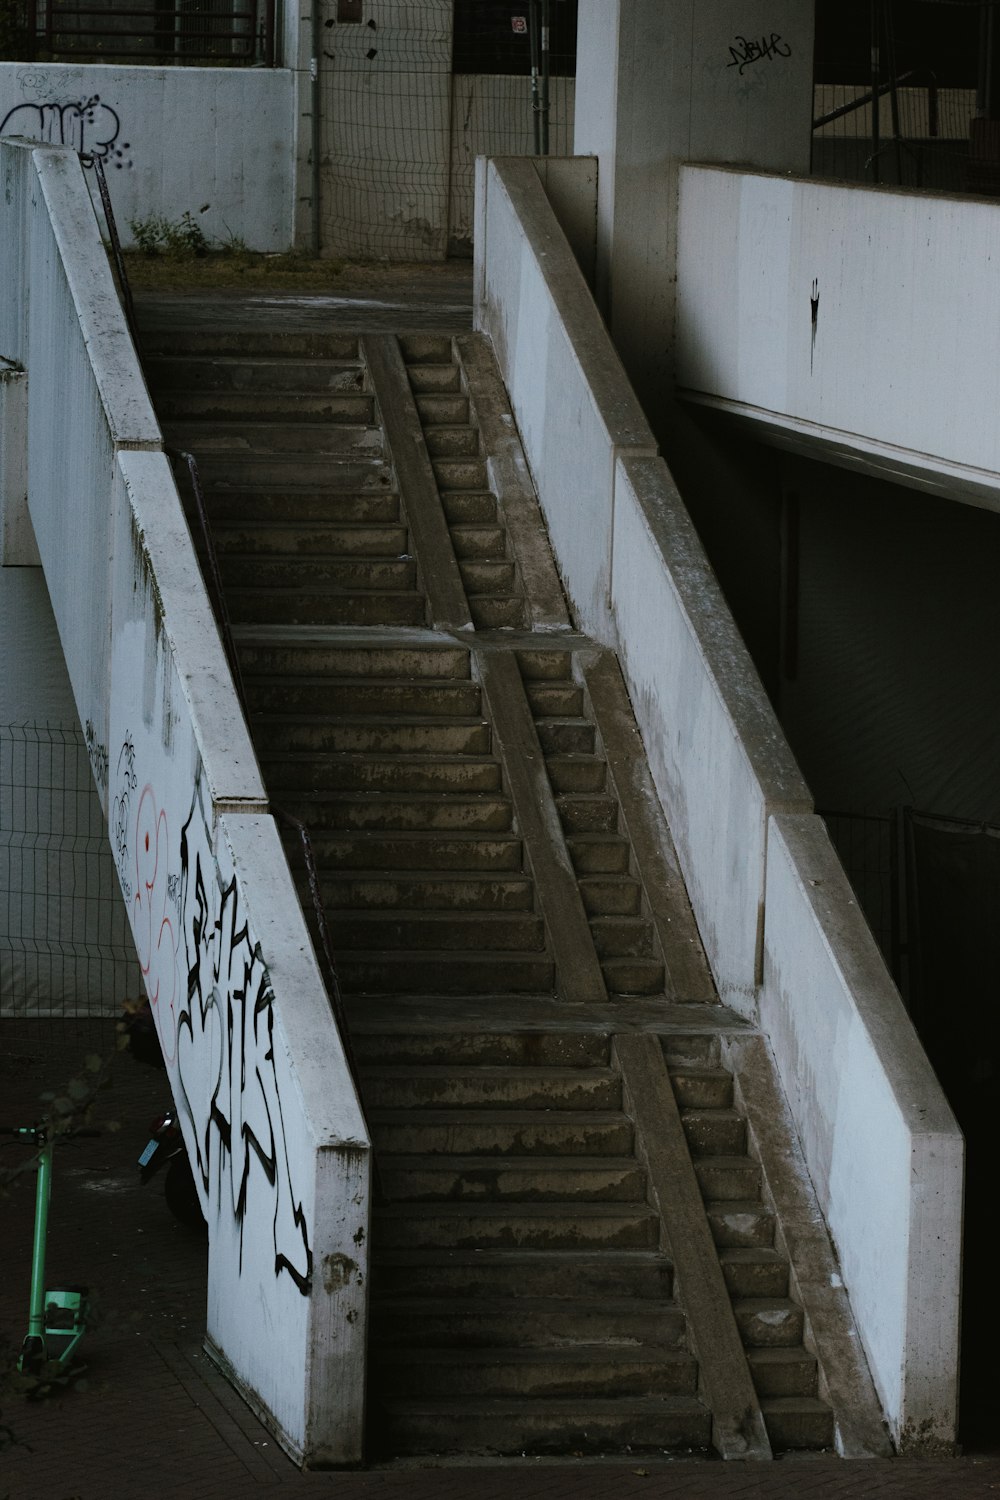 un escalier avec des graffitis dessus